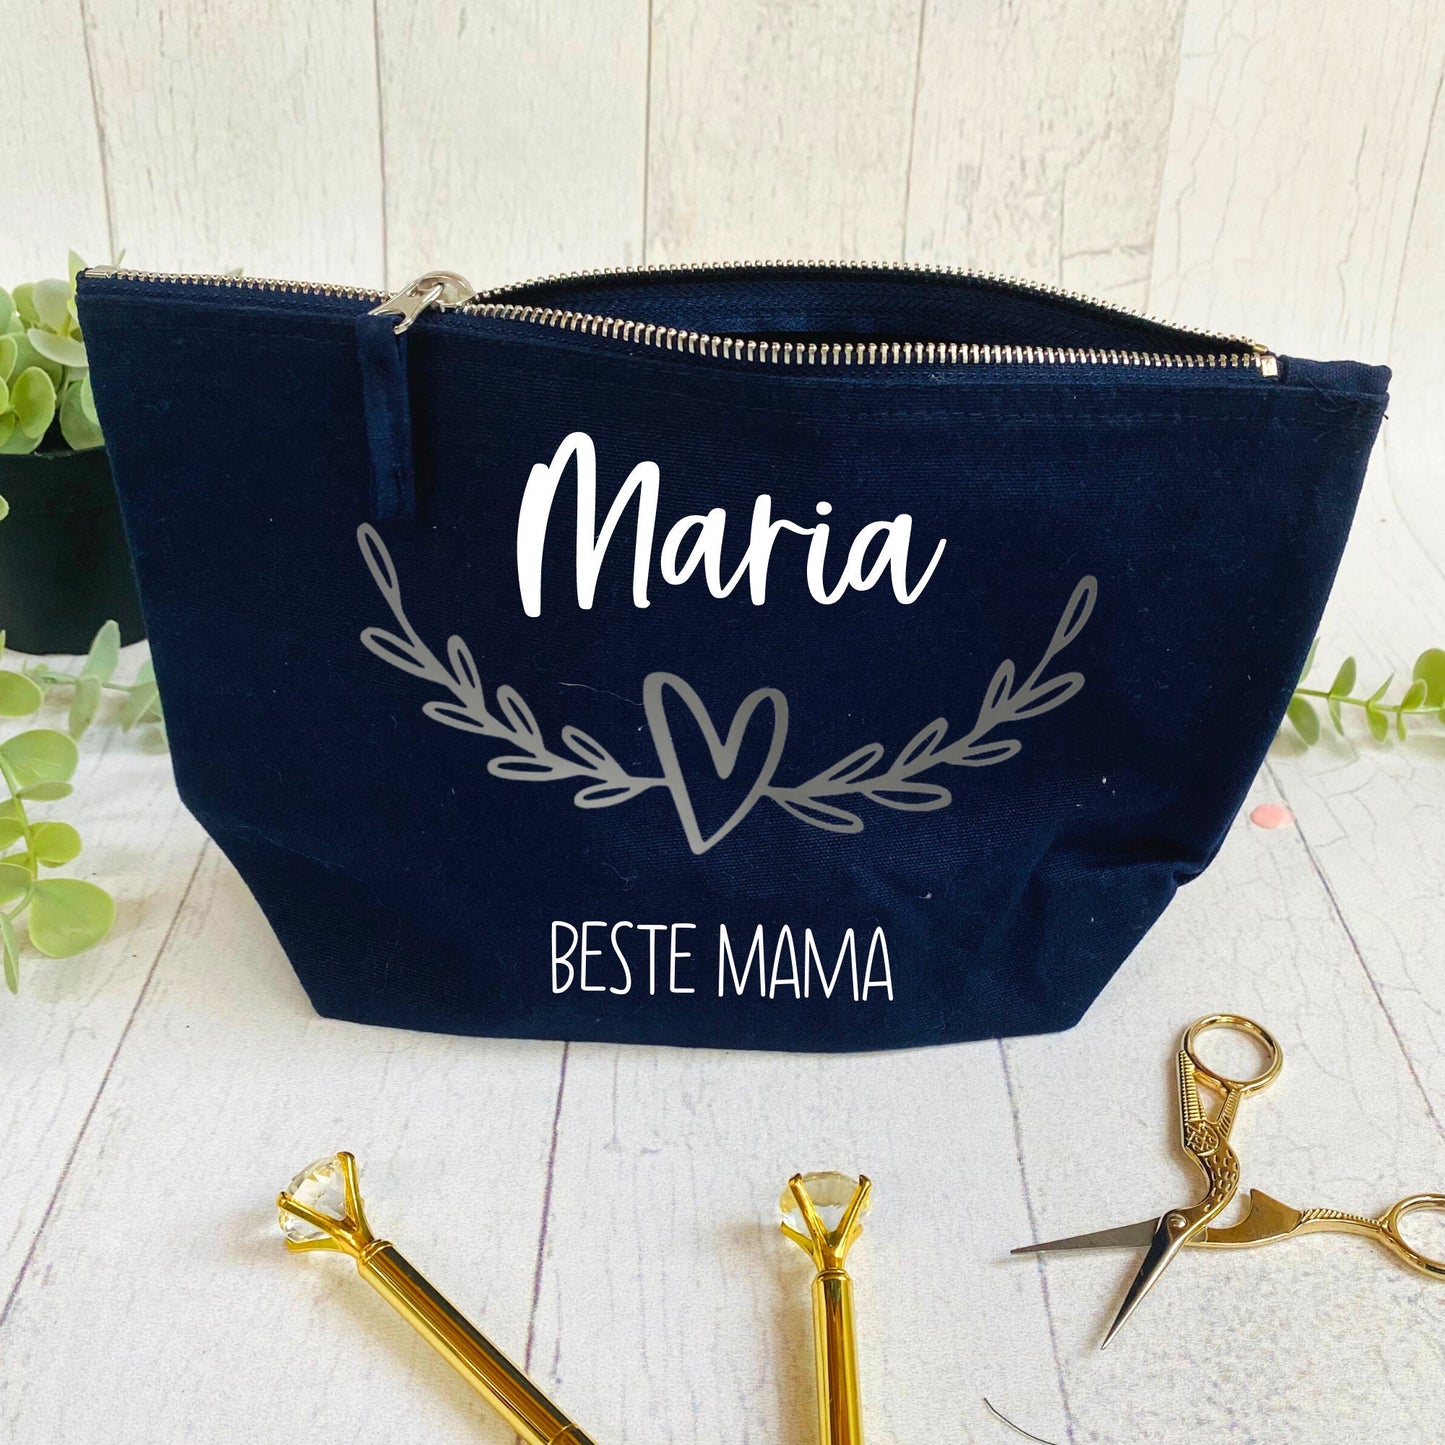 Geschenk für die Mama oder Freundin - personalisierte Kosmetiktasche dunkelblau - schön zum Geburtstag oder Muttertag - verschiedene Designs